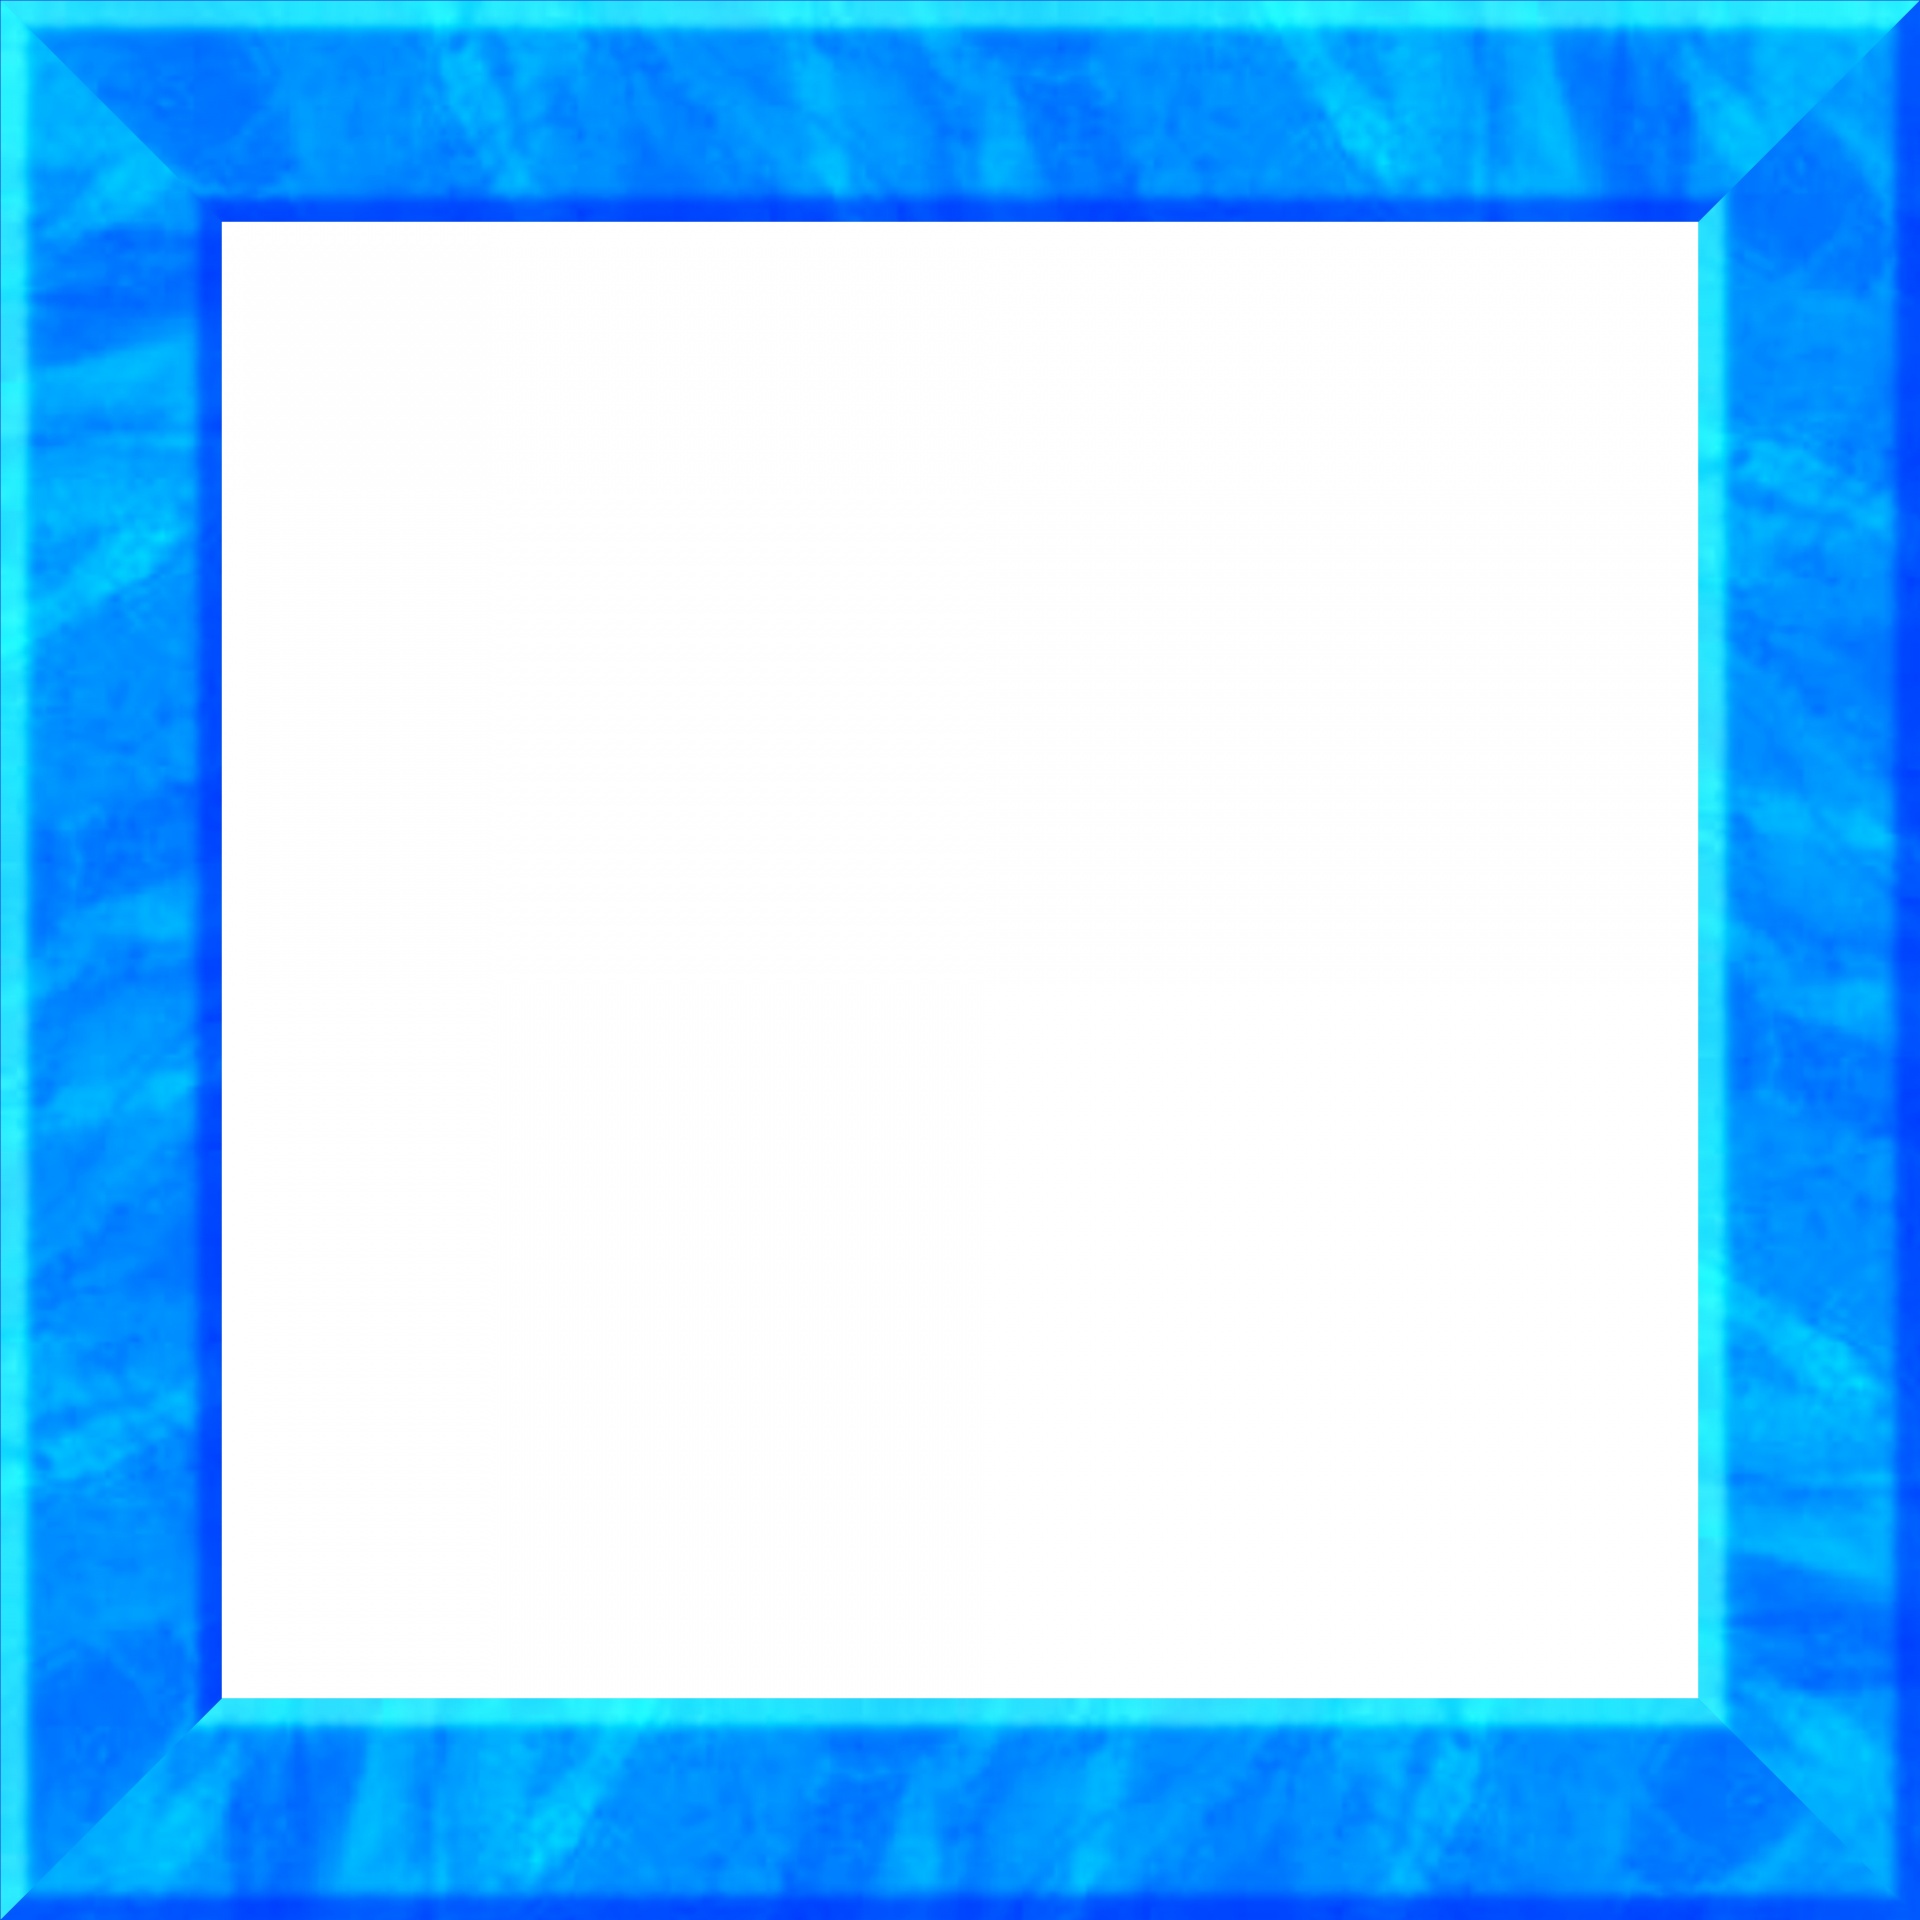 Frame de mármore azul